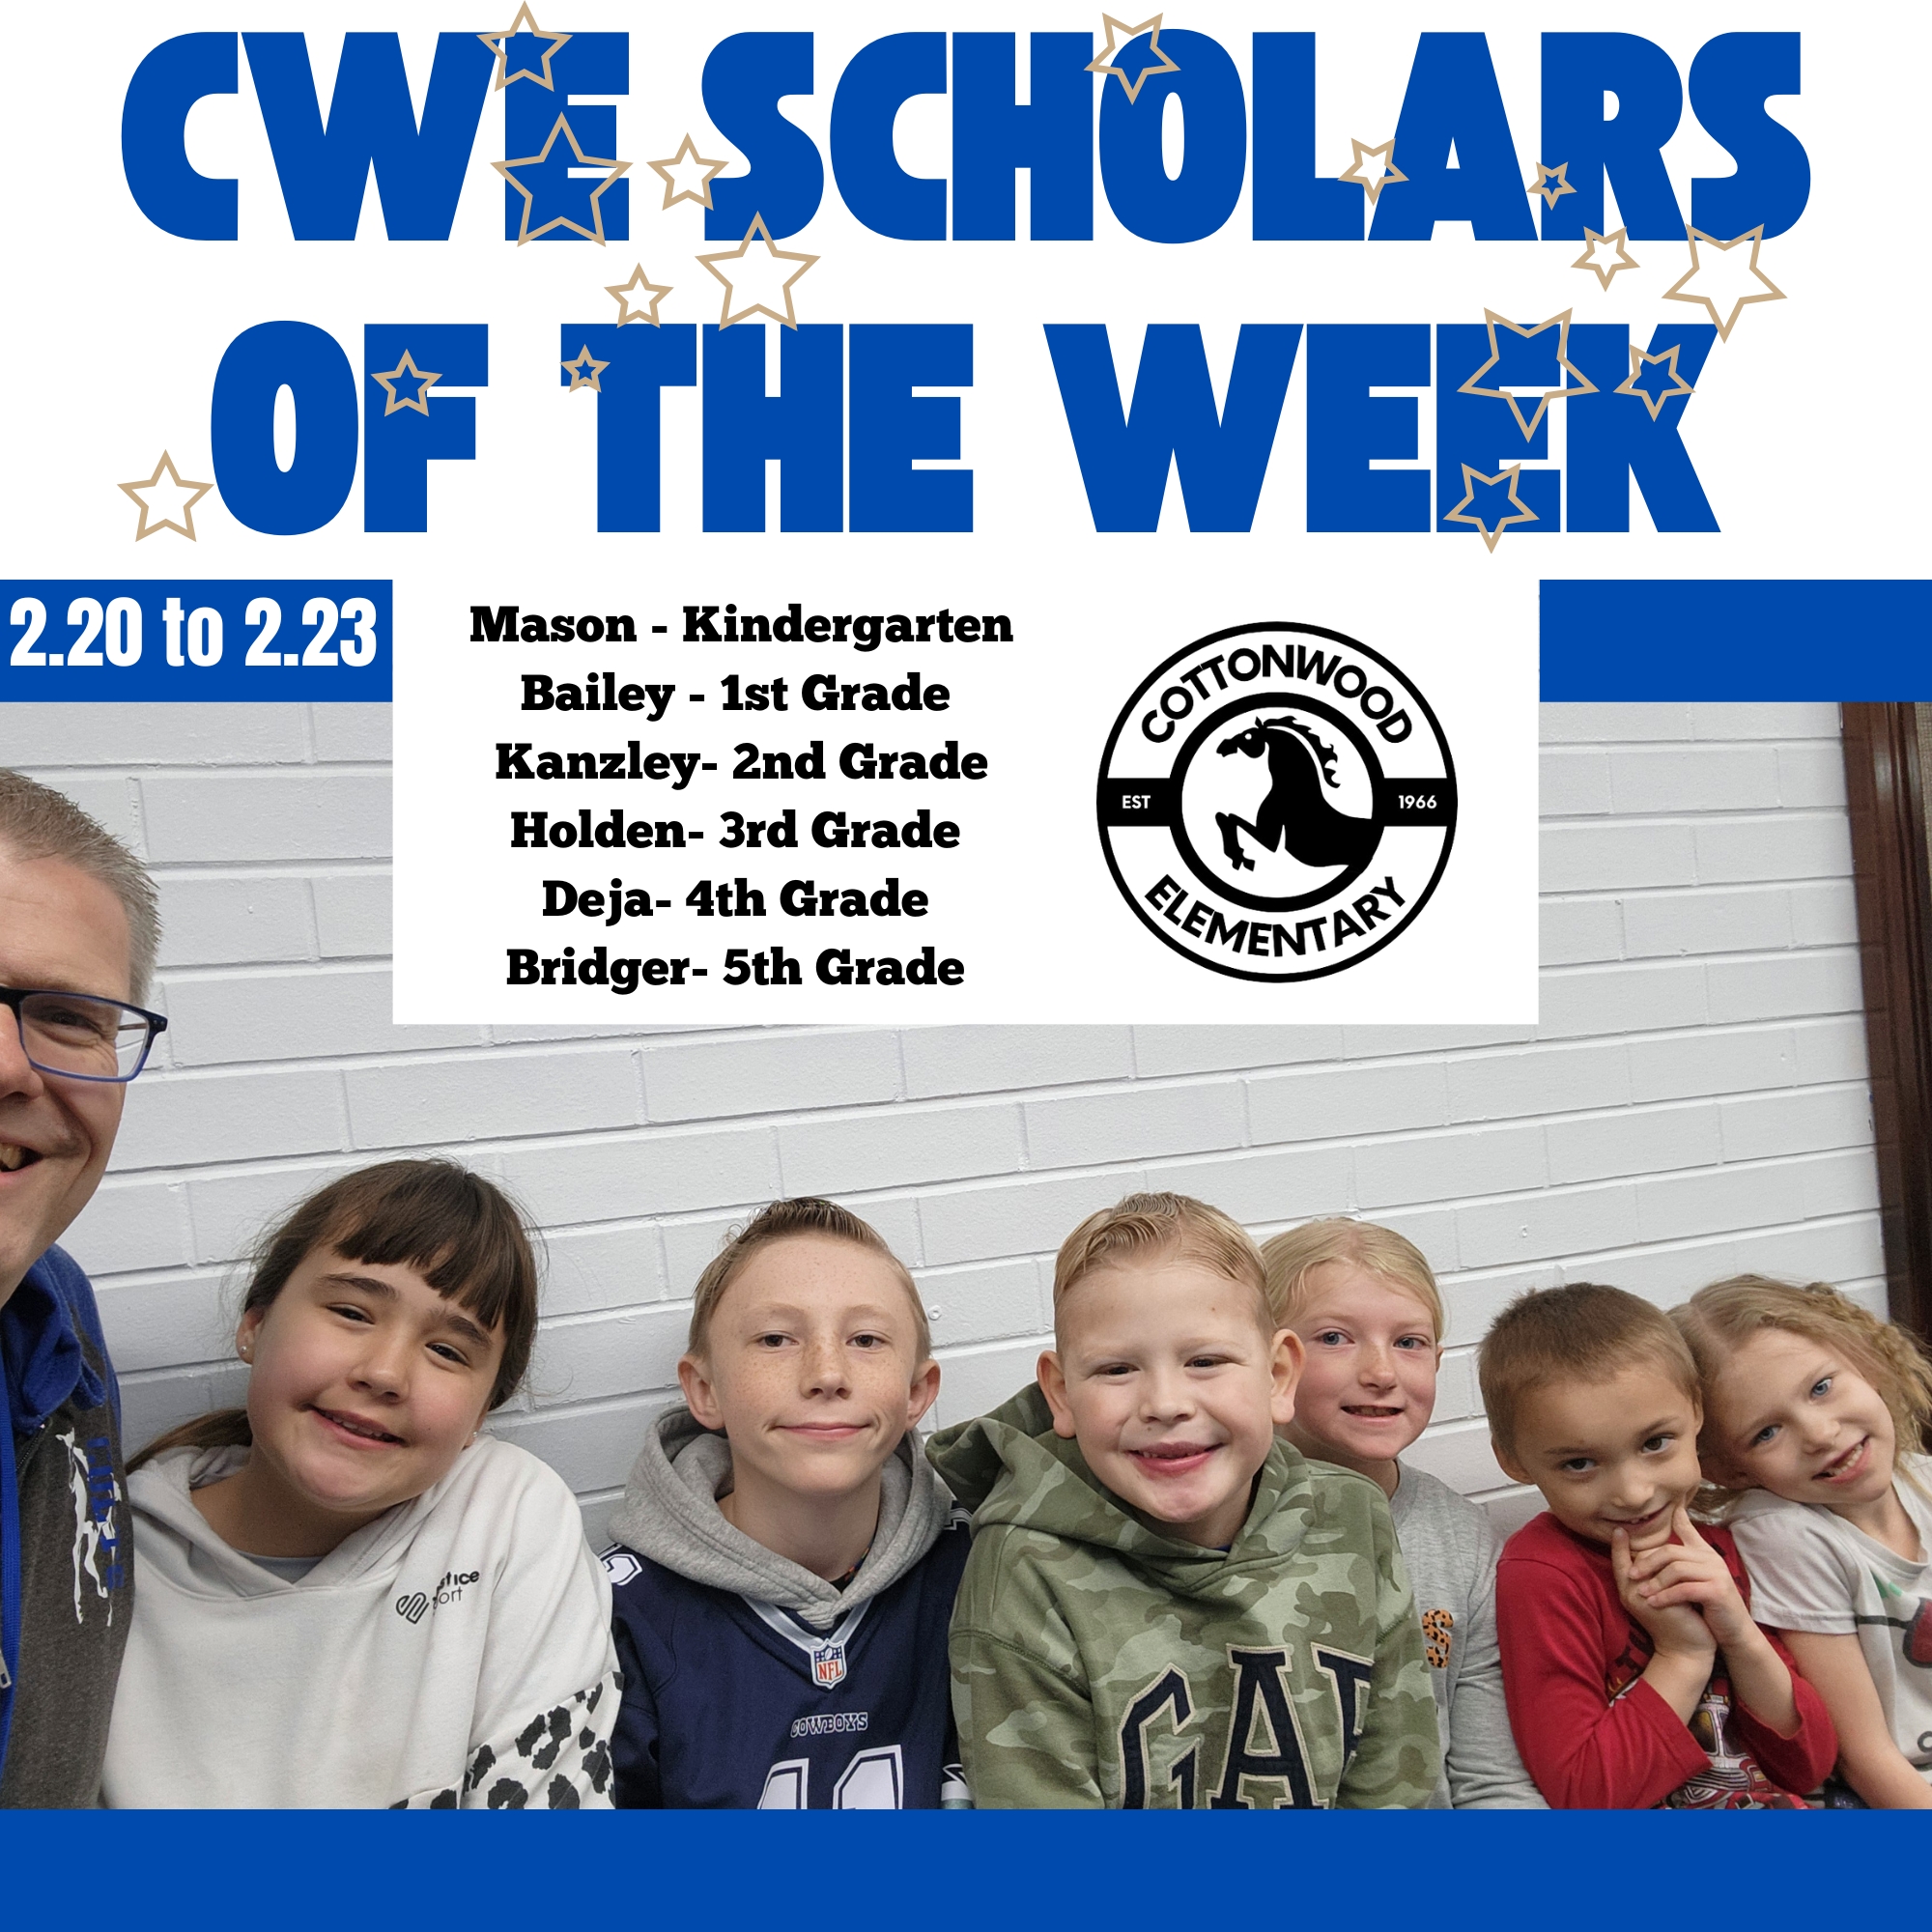 CWE-Scholars-of-the-Week-2.20-to-2.23.jpg